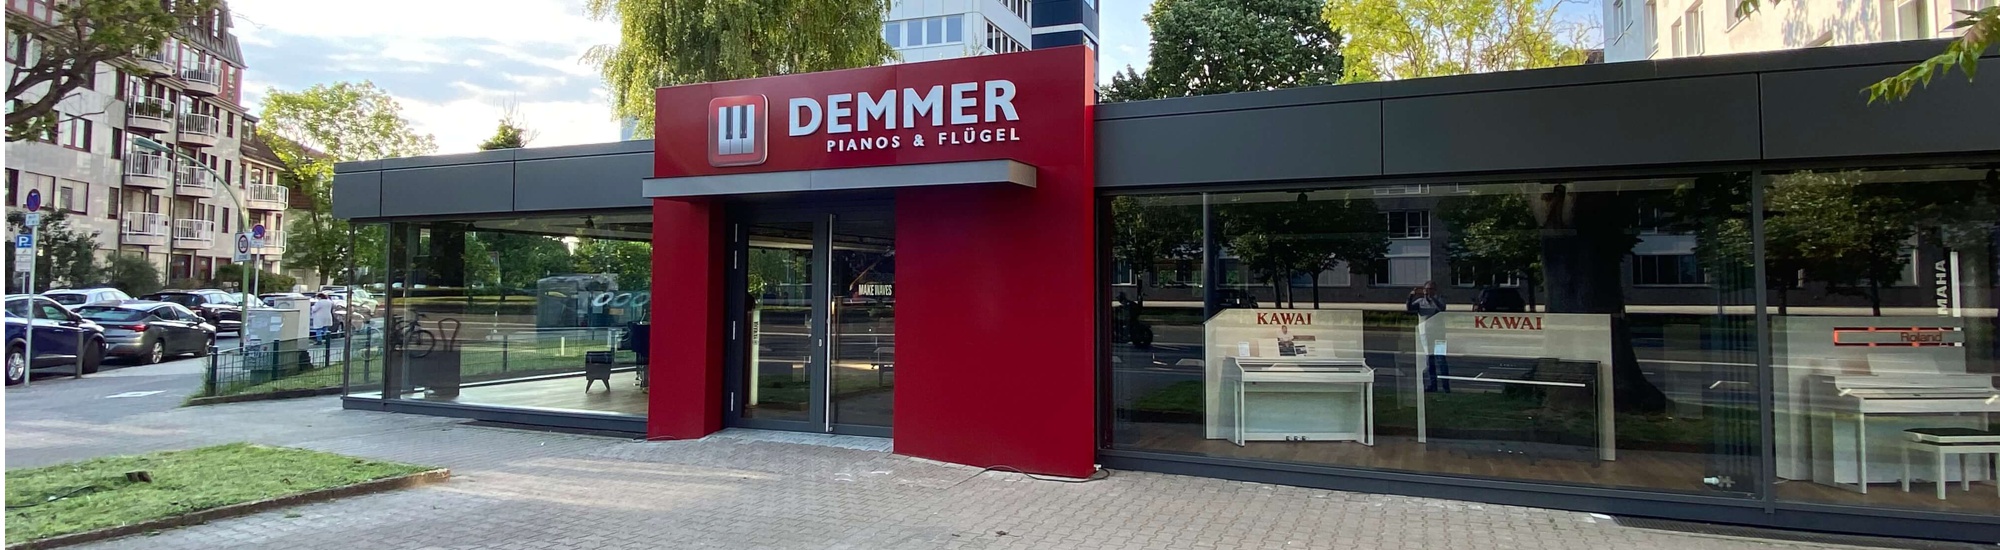 DEMMER - Pianos & Flügel e.K. Filiale Frankfurt